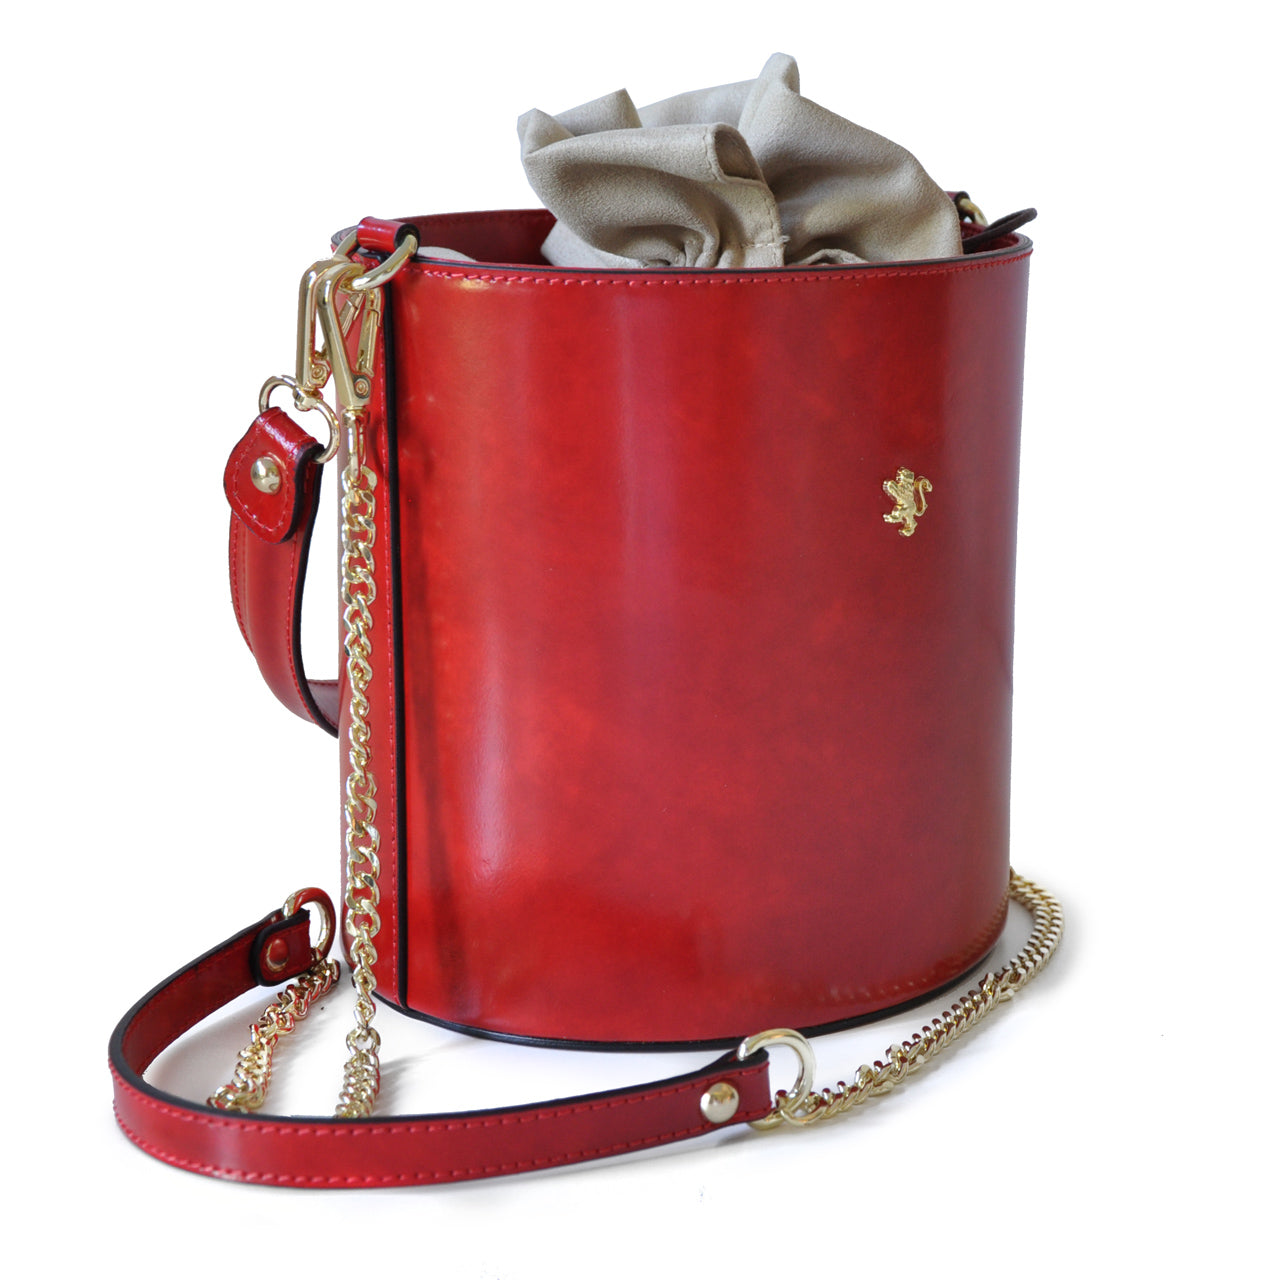 Pratesi Bag Secchiello R335 in genuine Italian leather